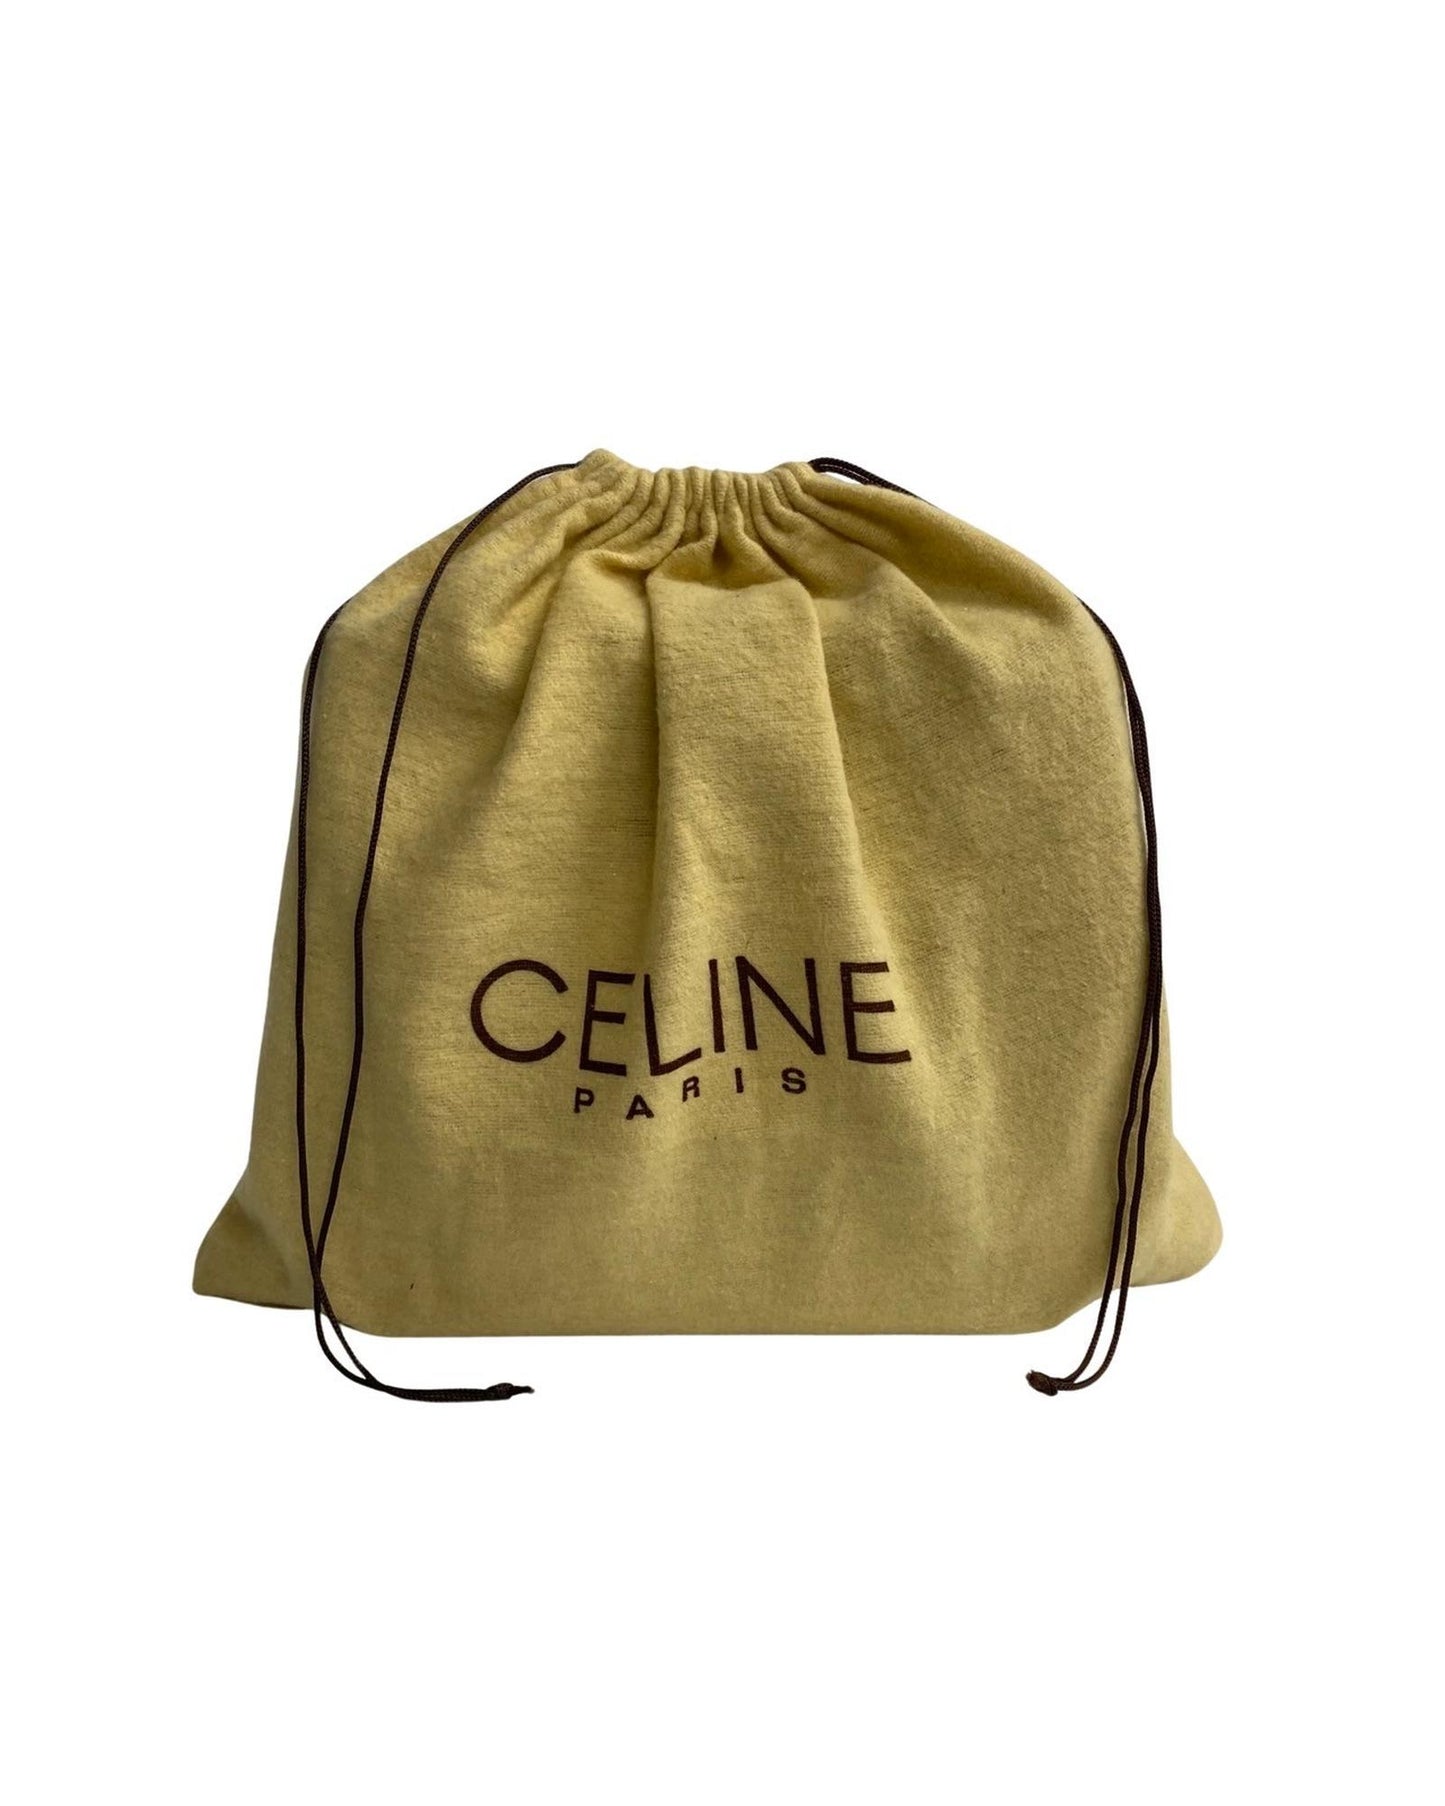 Celine Women's Leather Circle Logo Shoulder Bag in Black